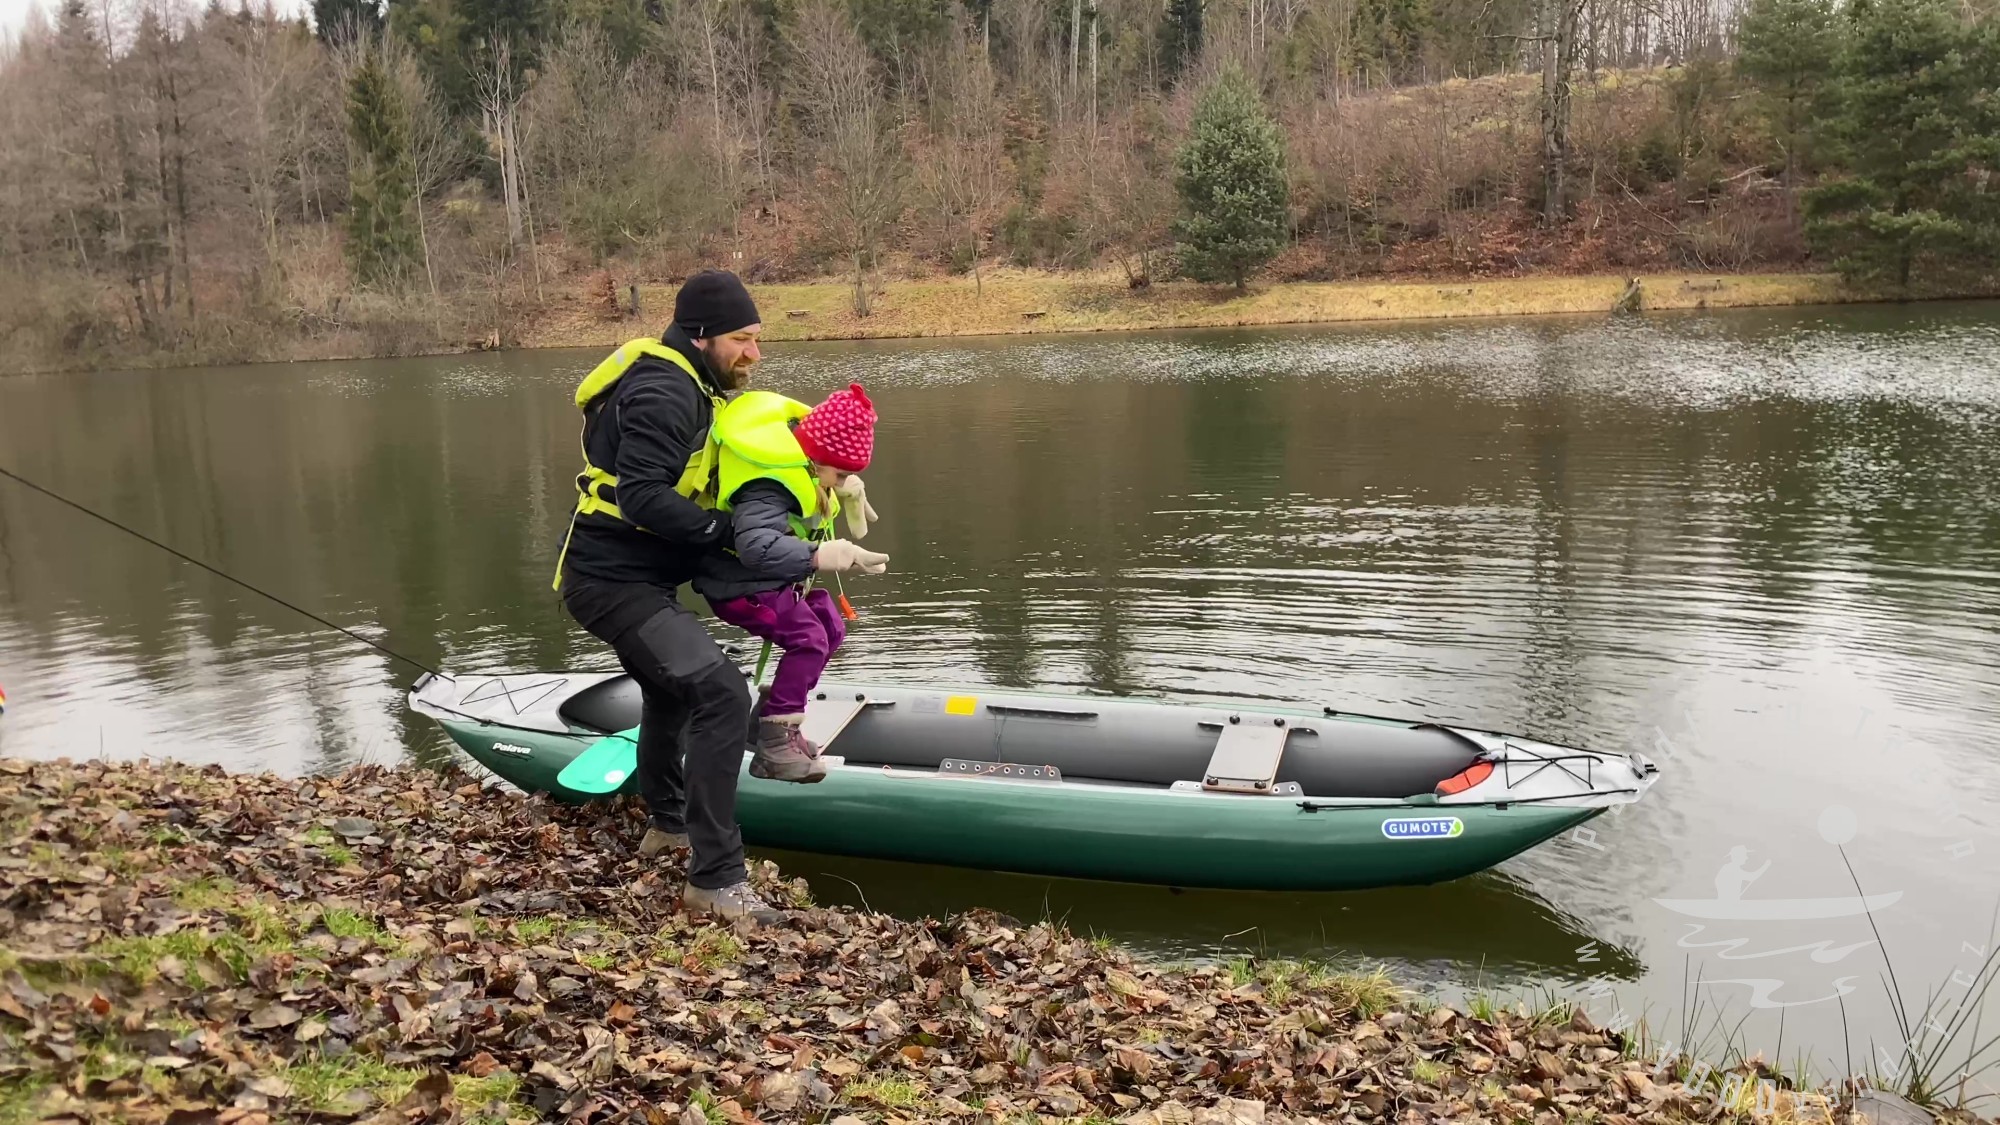 Splutí rybníku s dětmi | Ikea dřívkáč | Vepřová panenka – vodácký oběd | Vodácký bushcraft